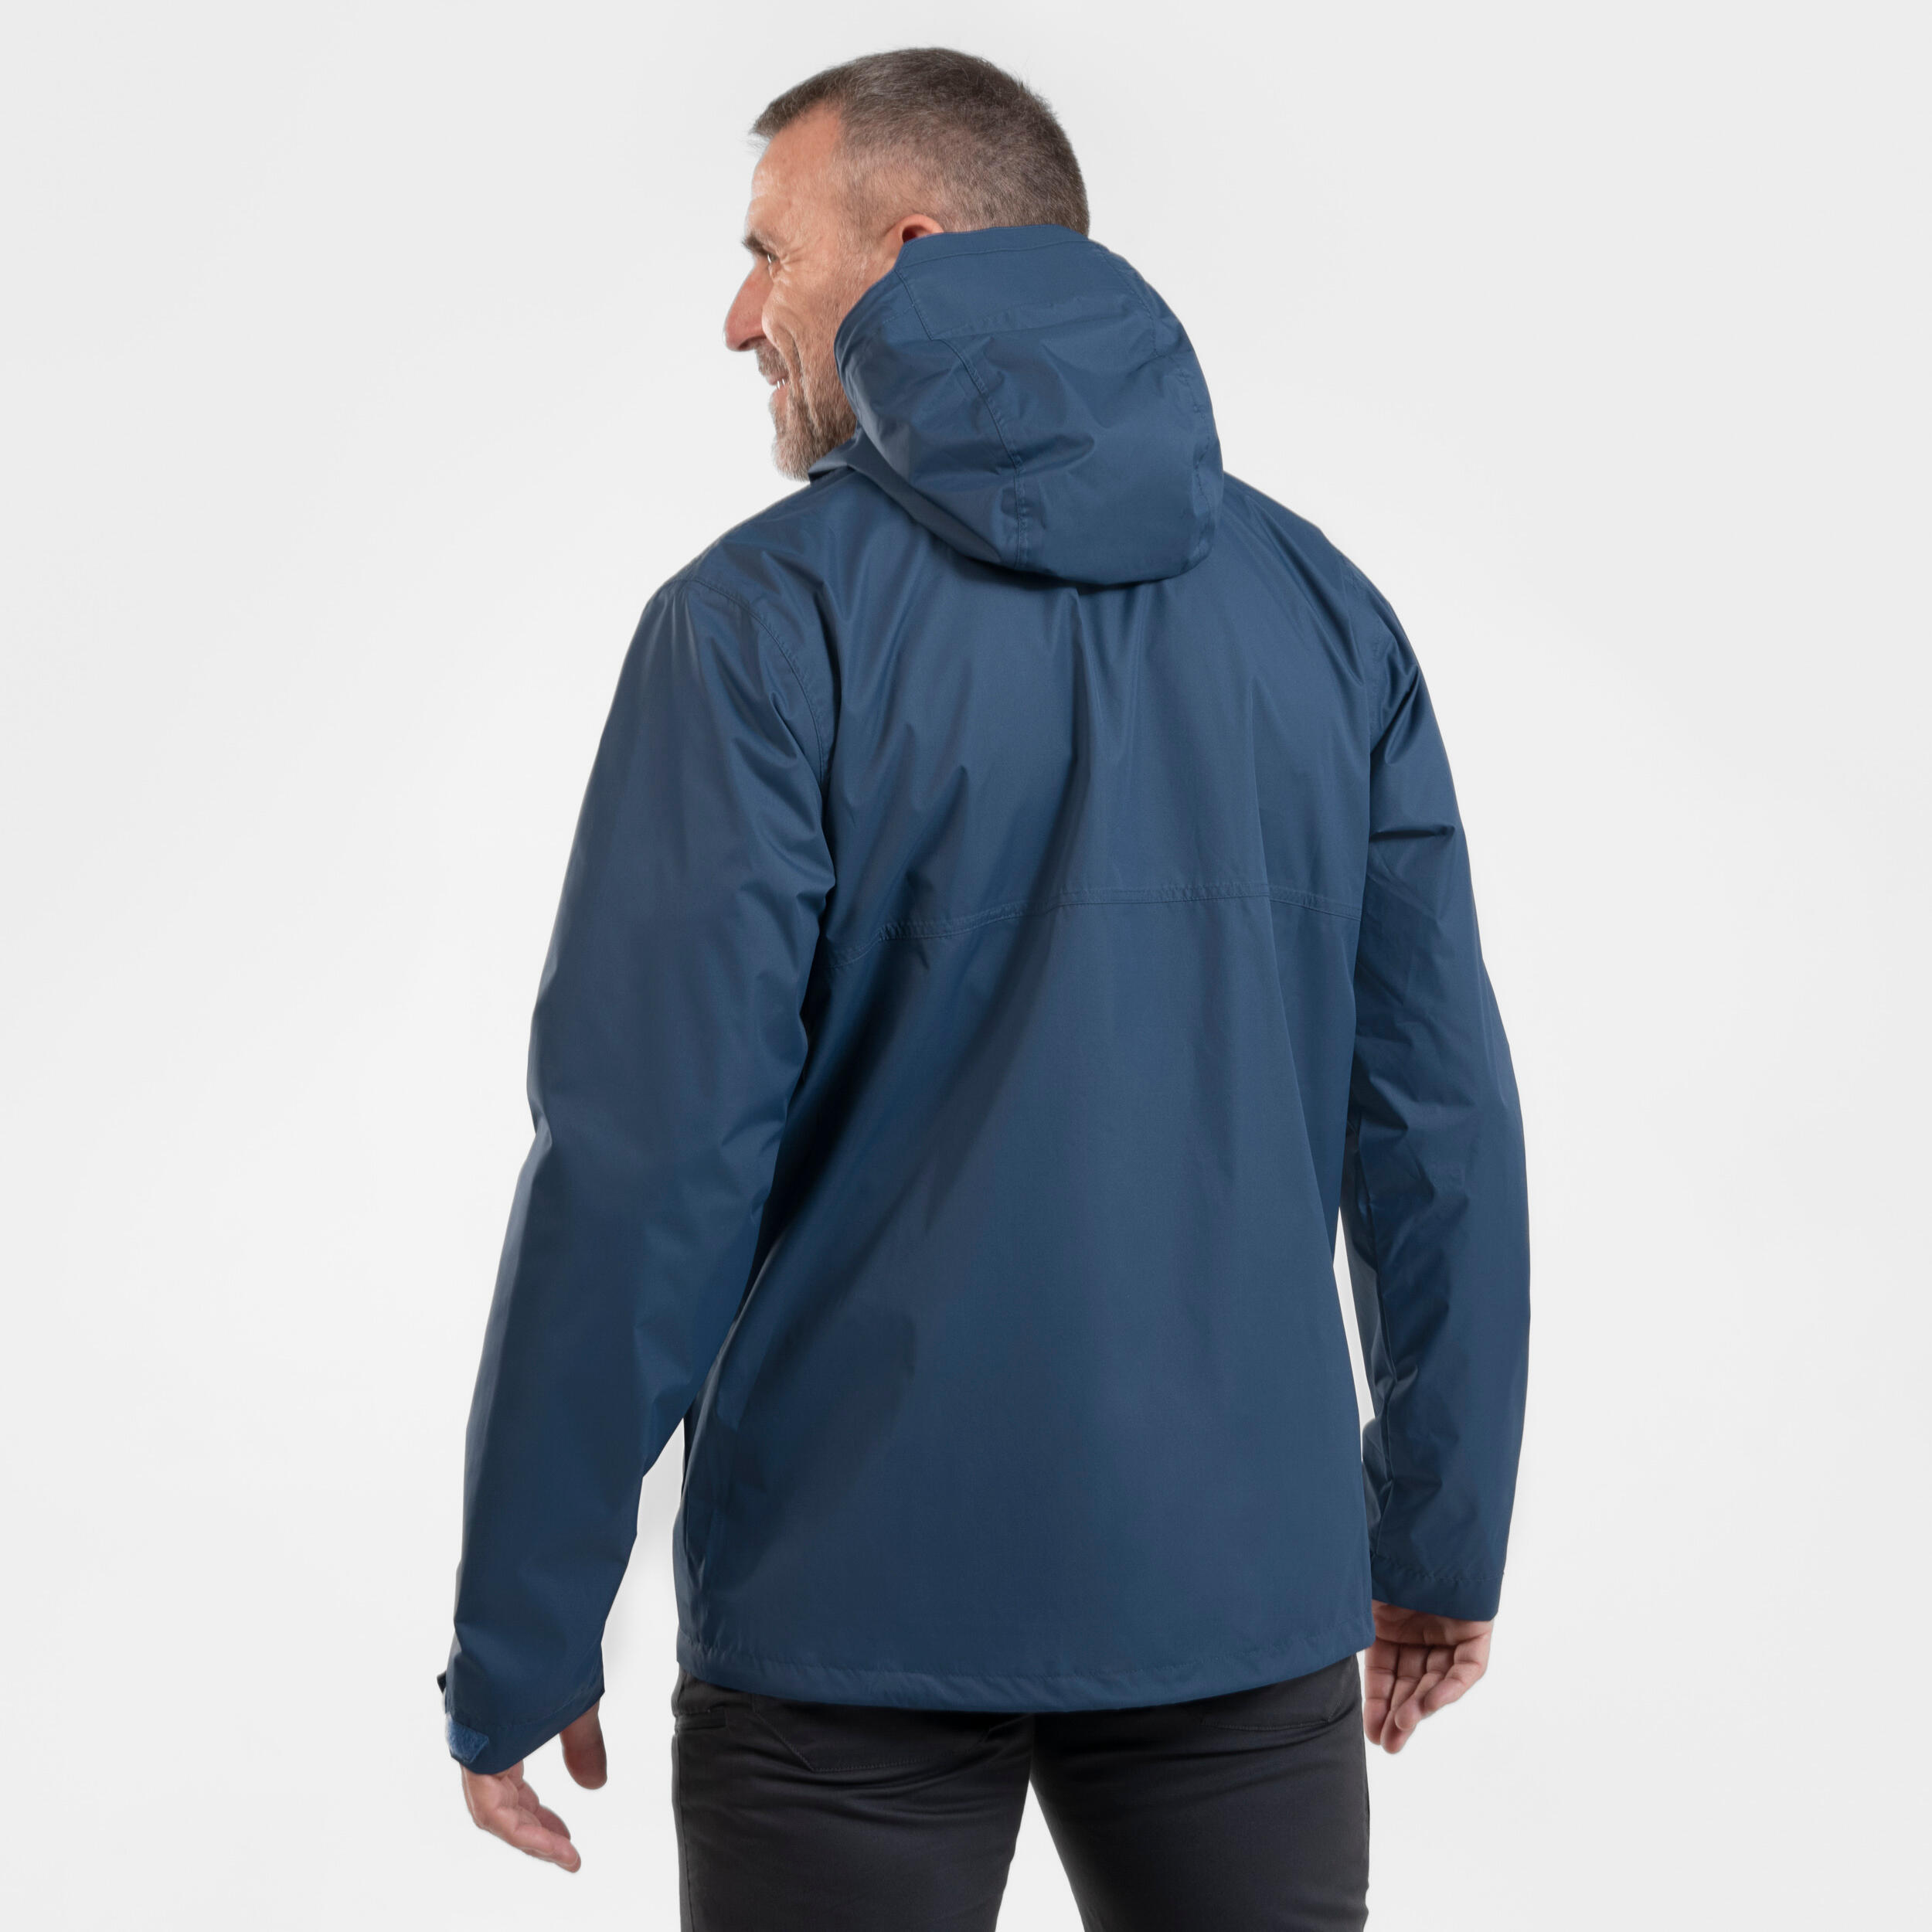 Manteau de randonnée imperméable homme – NH 500 bleu - QUECHUA